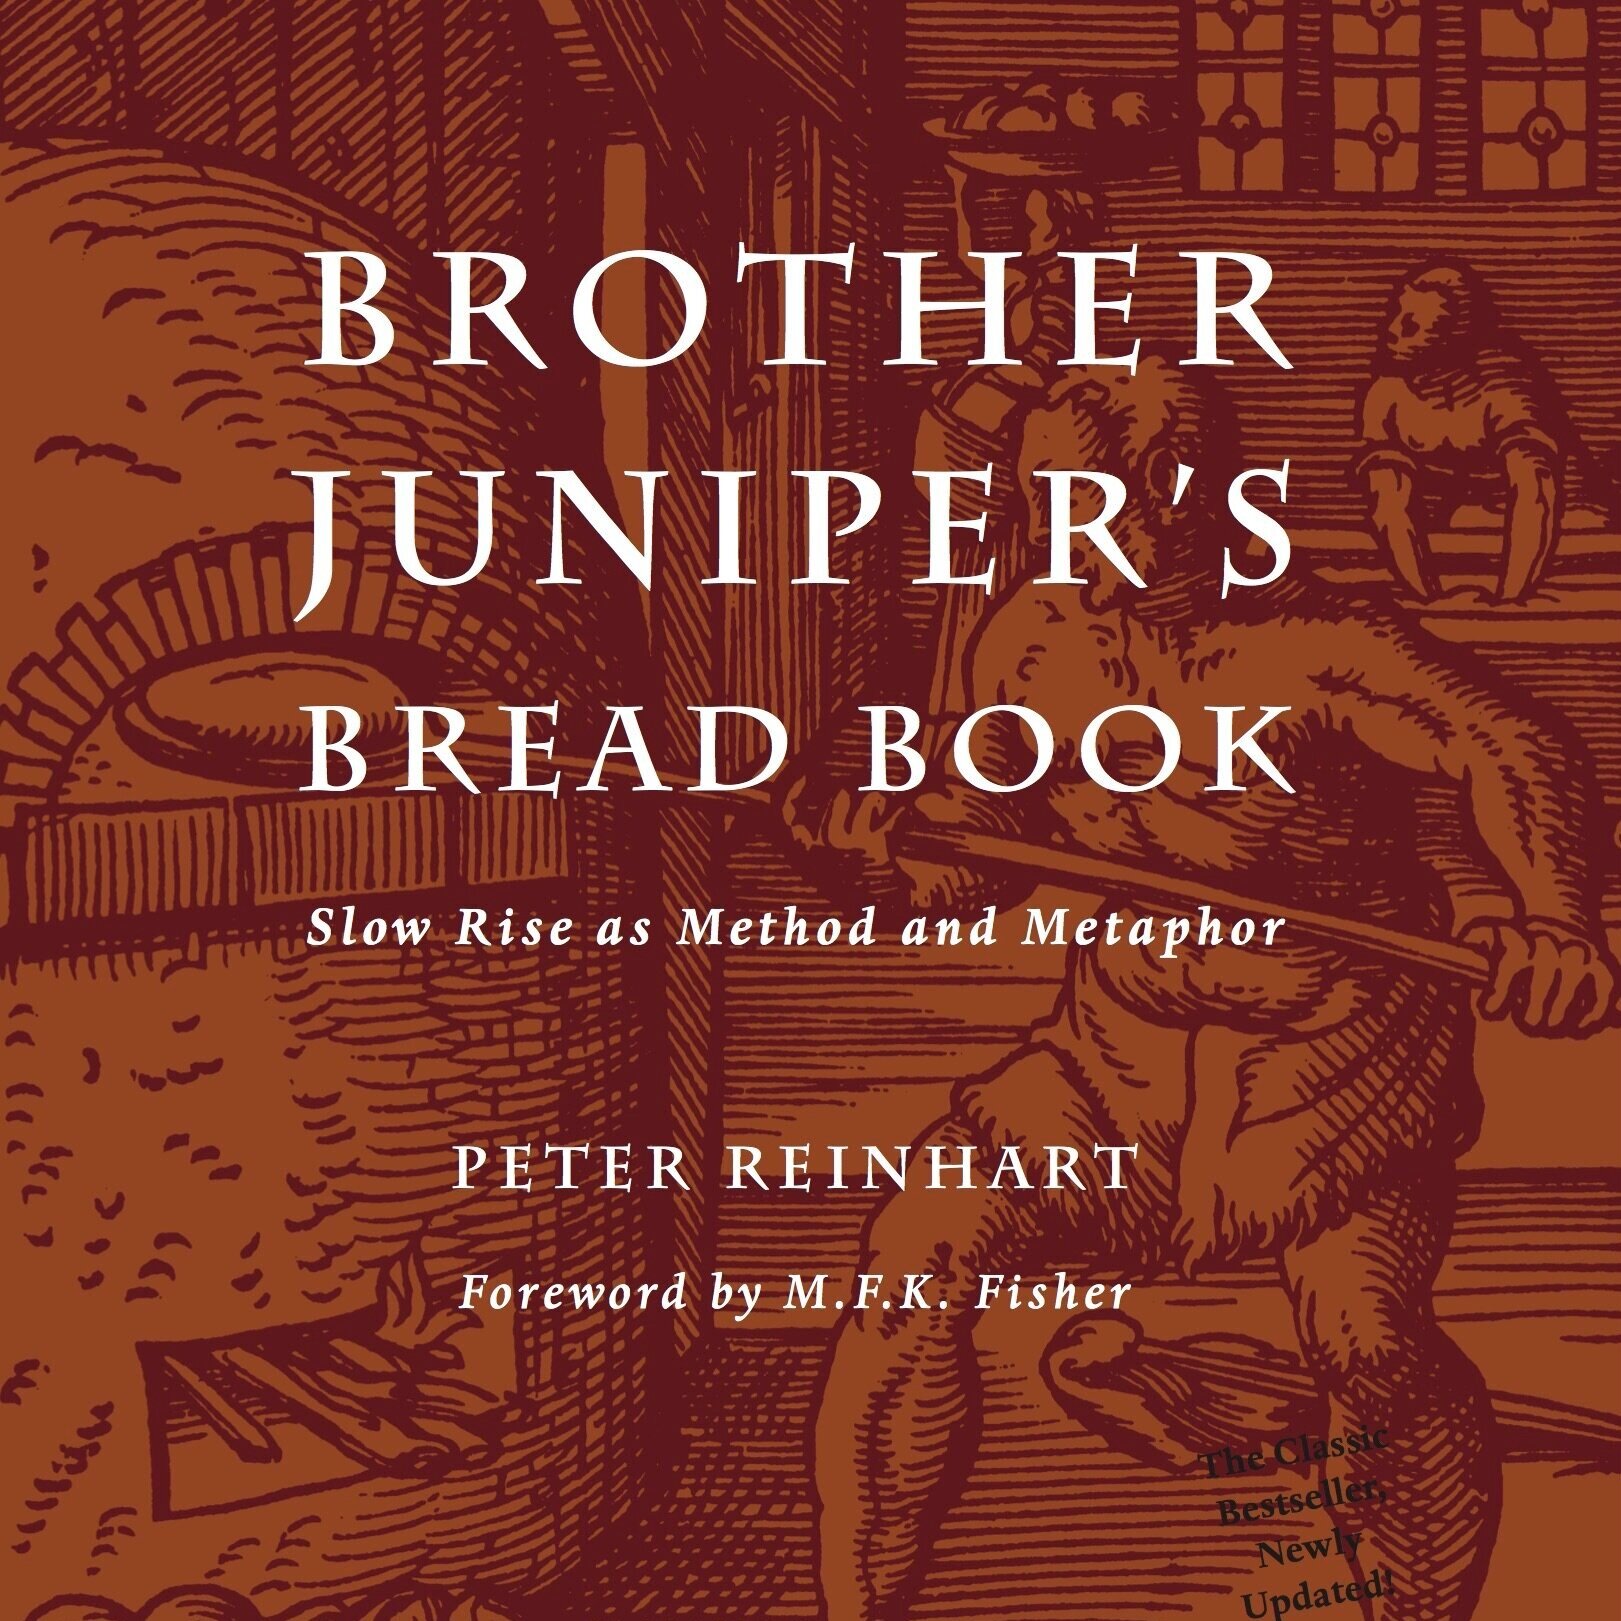 Brother Juniper's Bread Book by Peter Reinhart